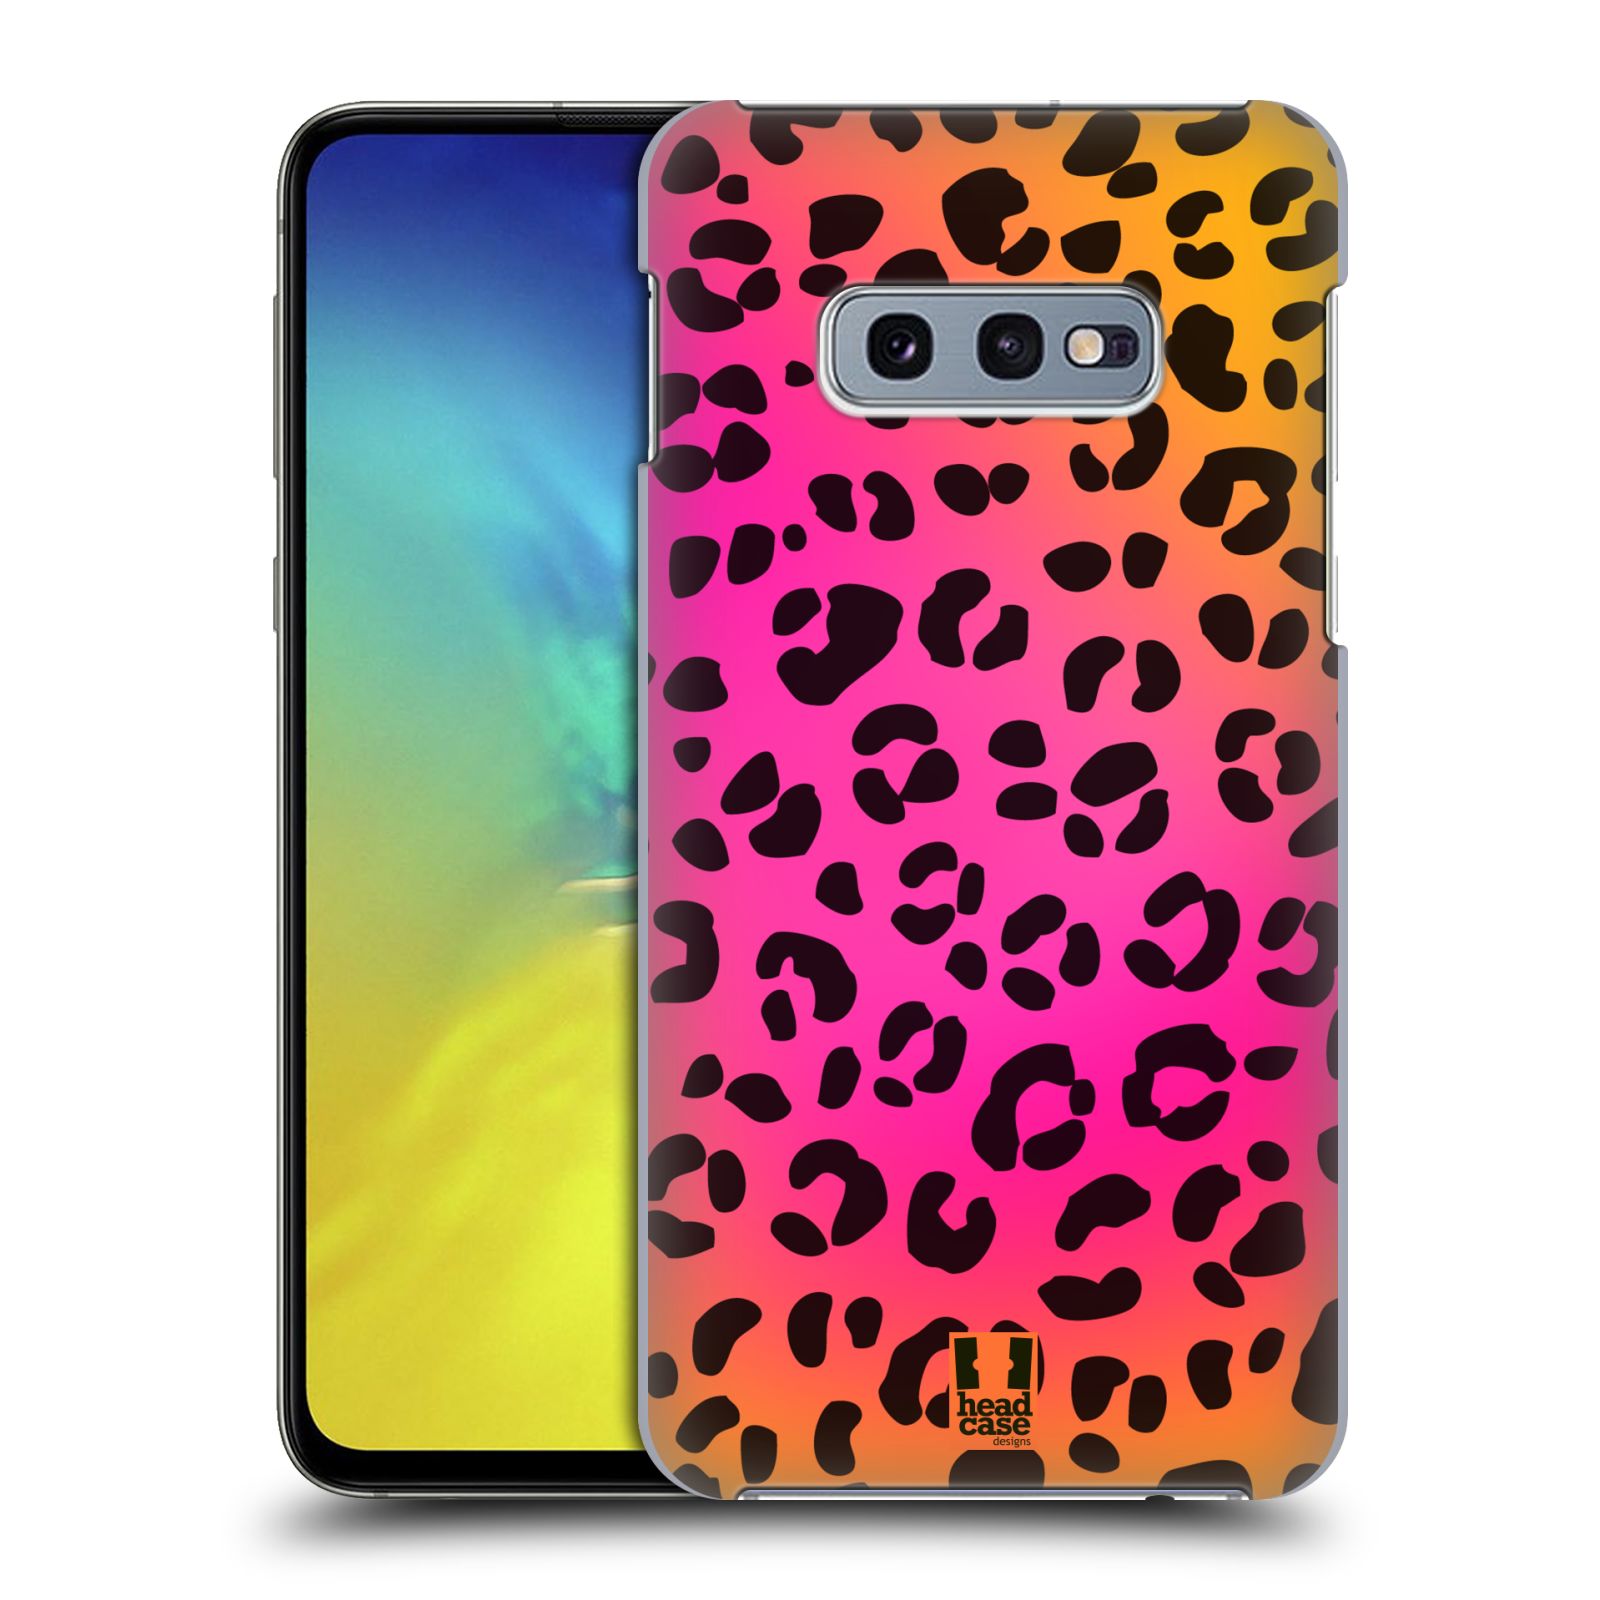 Pouzdro na mobil Samsung Galaxy S10e - HEAD CASE - vzor Divočina zvíře růžový leopard